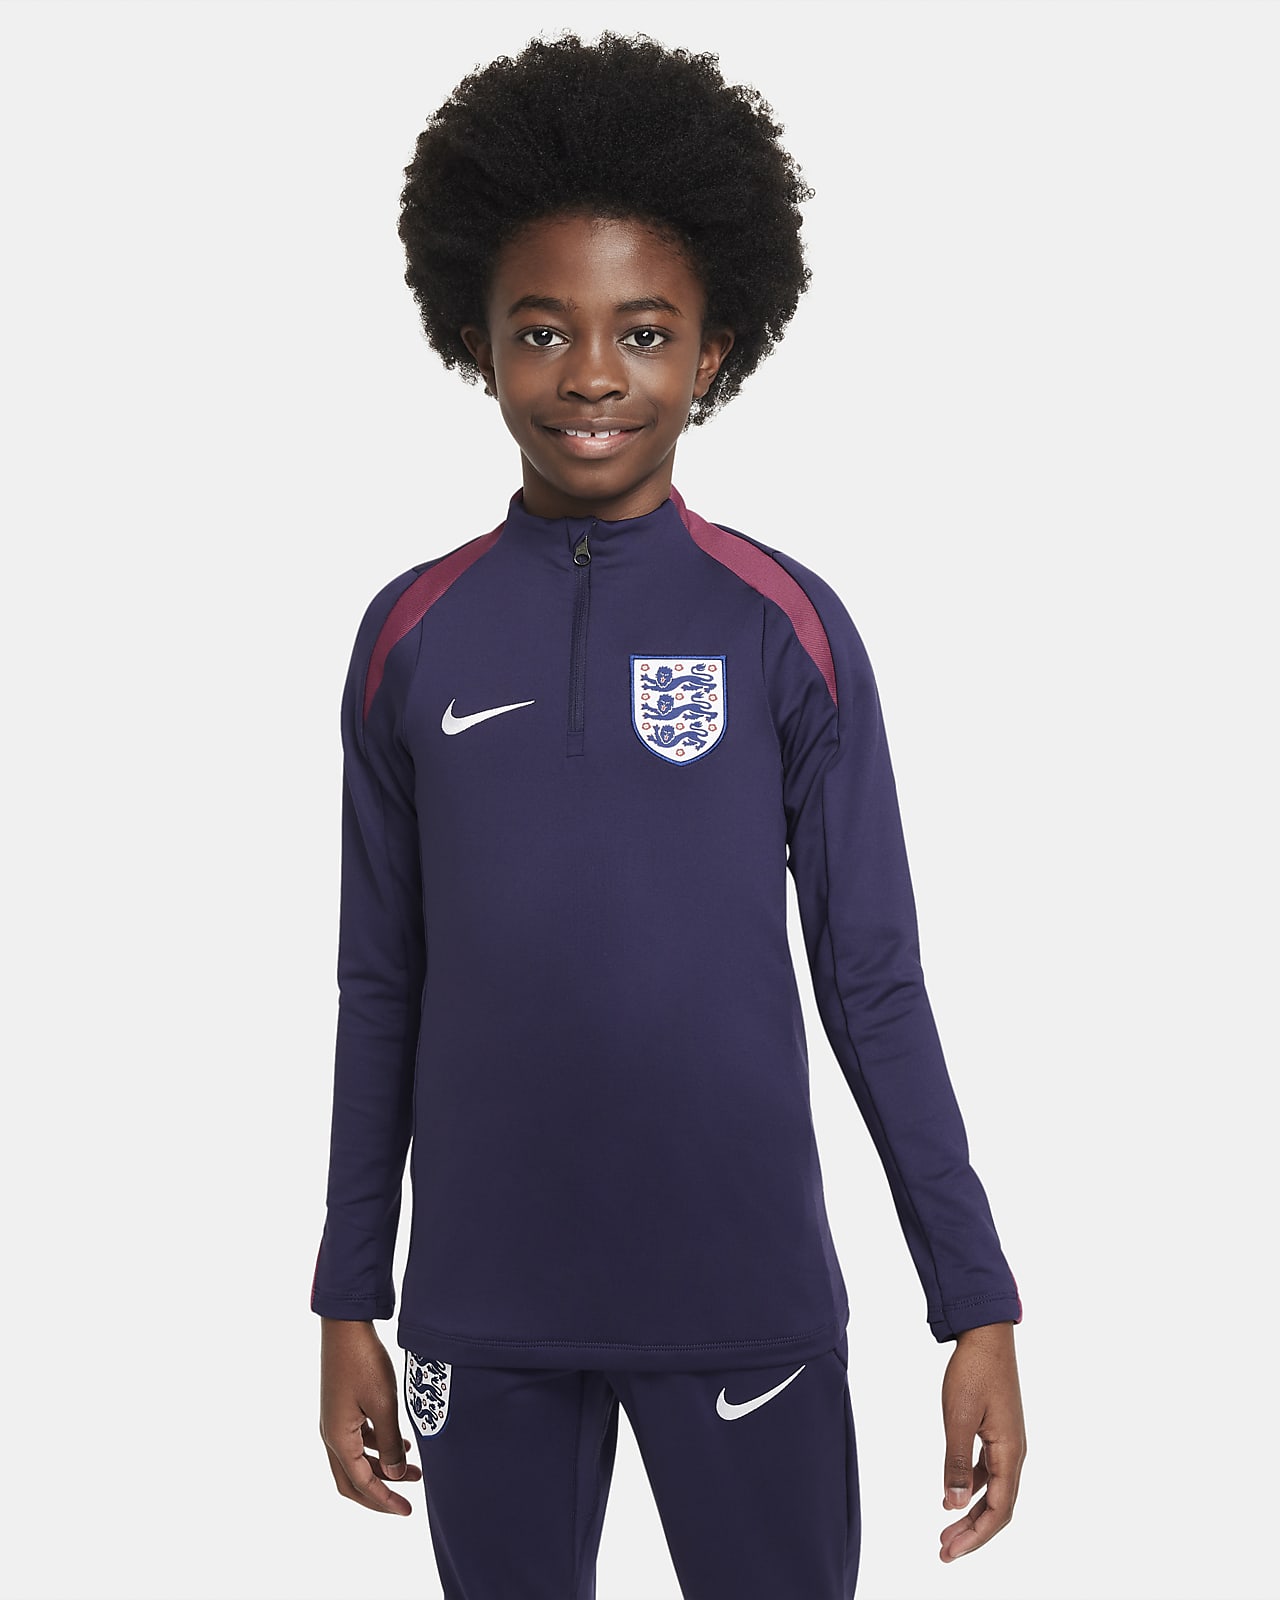 Engeland Strike Nike Dri-FIT voetbaltrainingstop voor kids